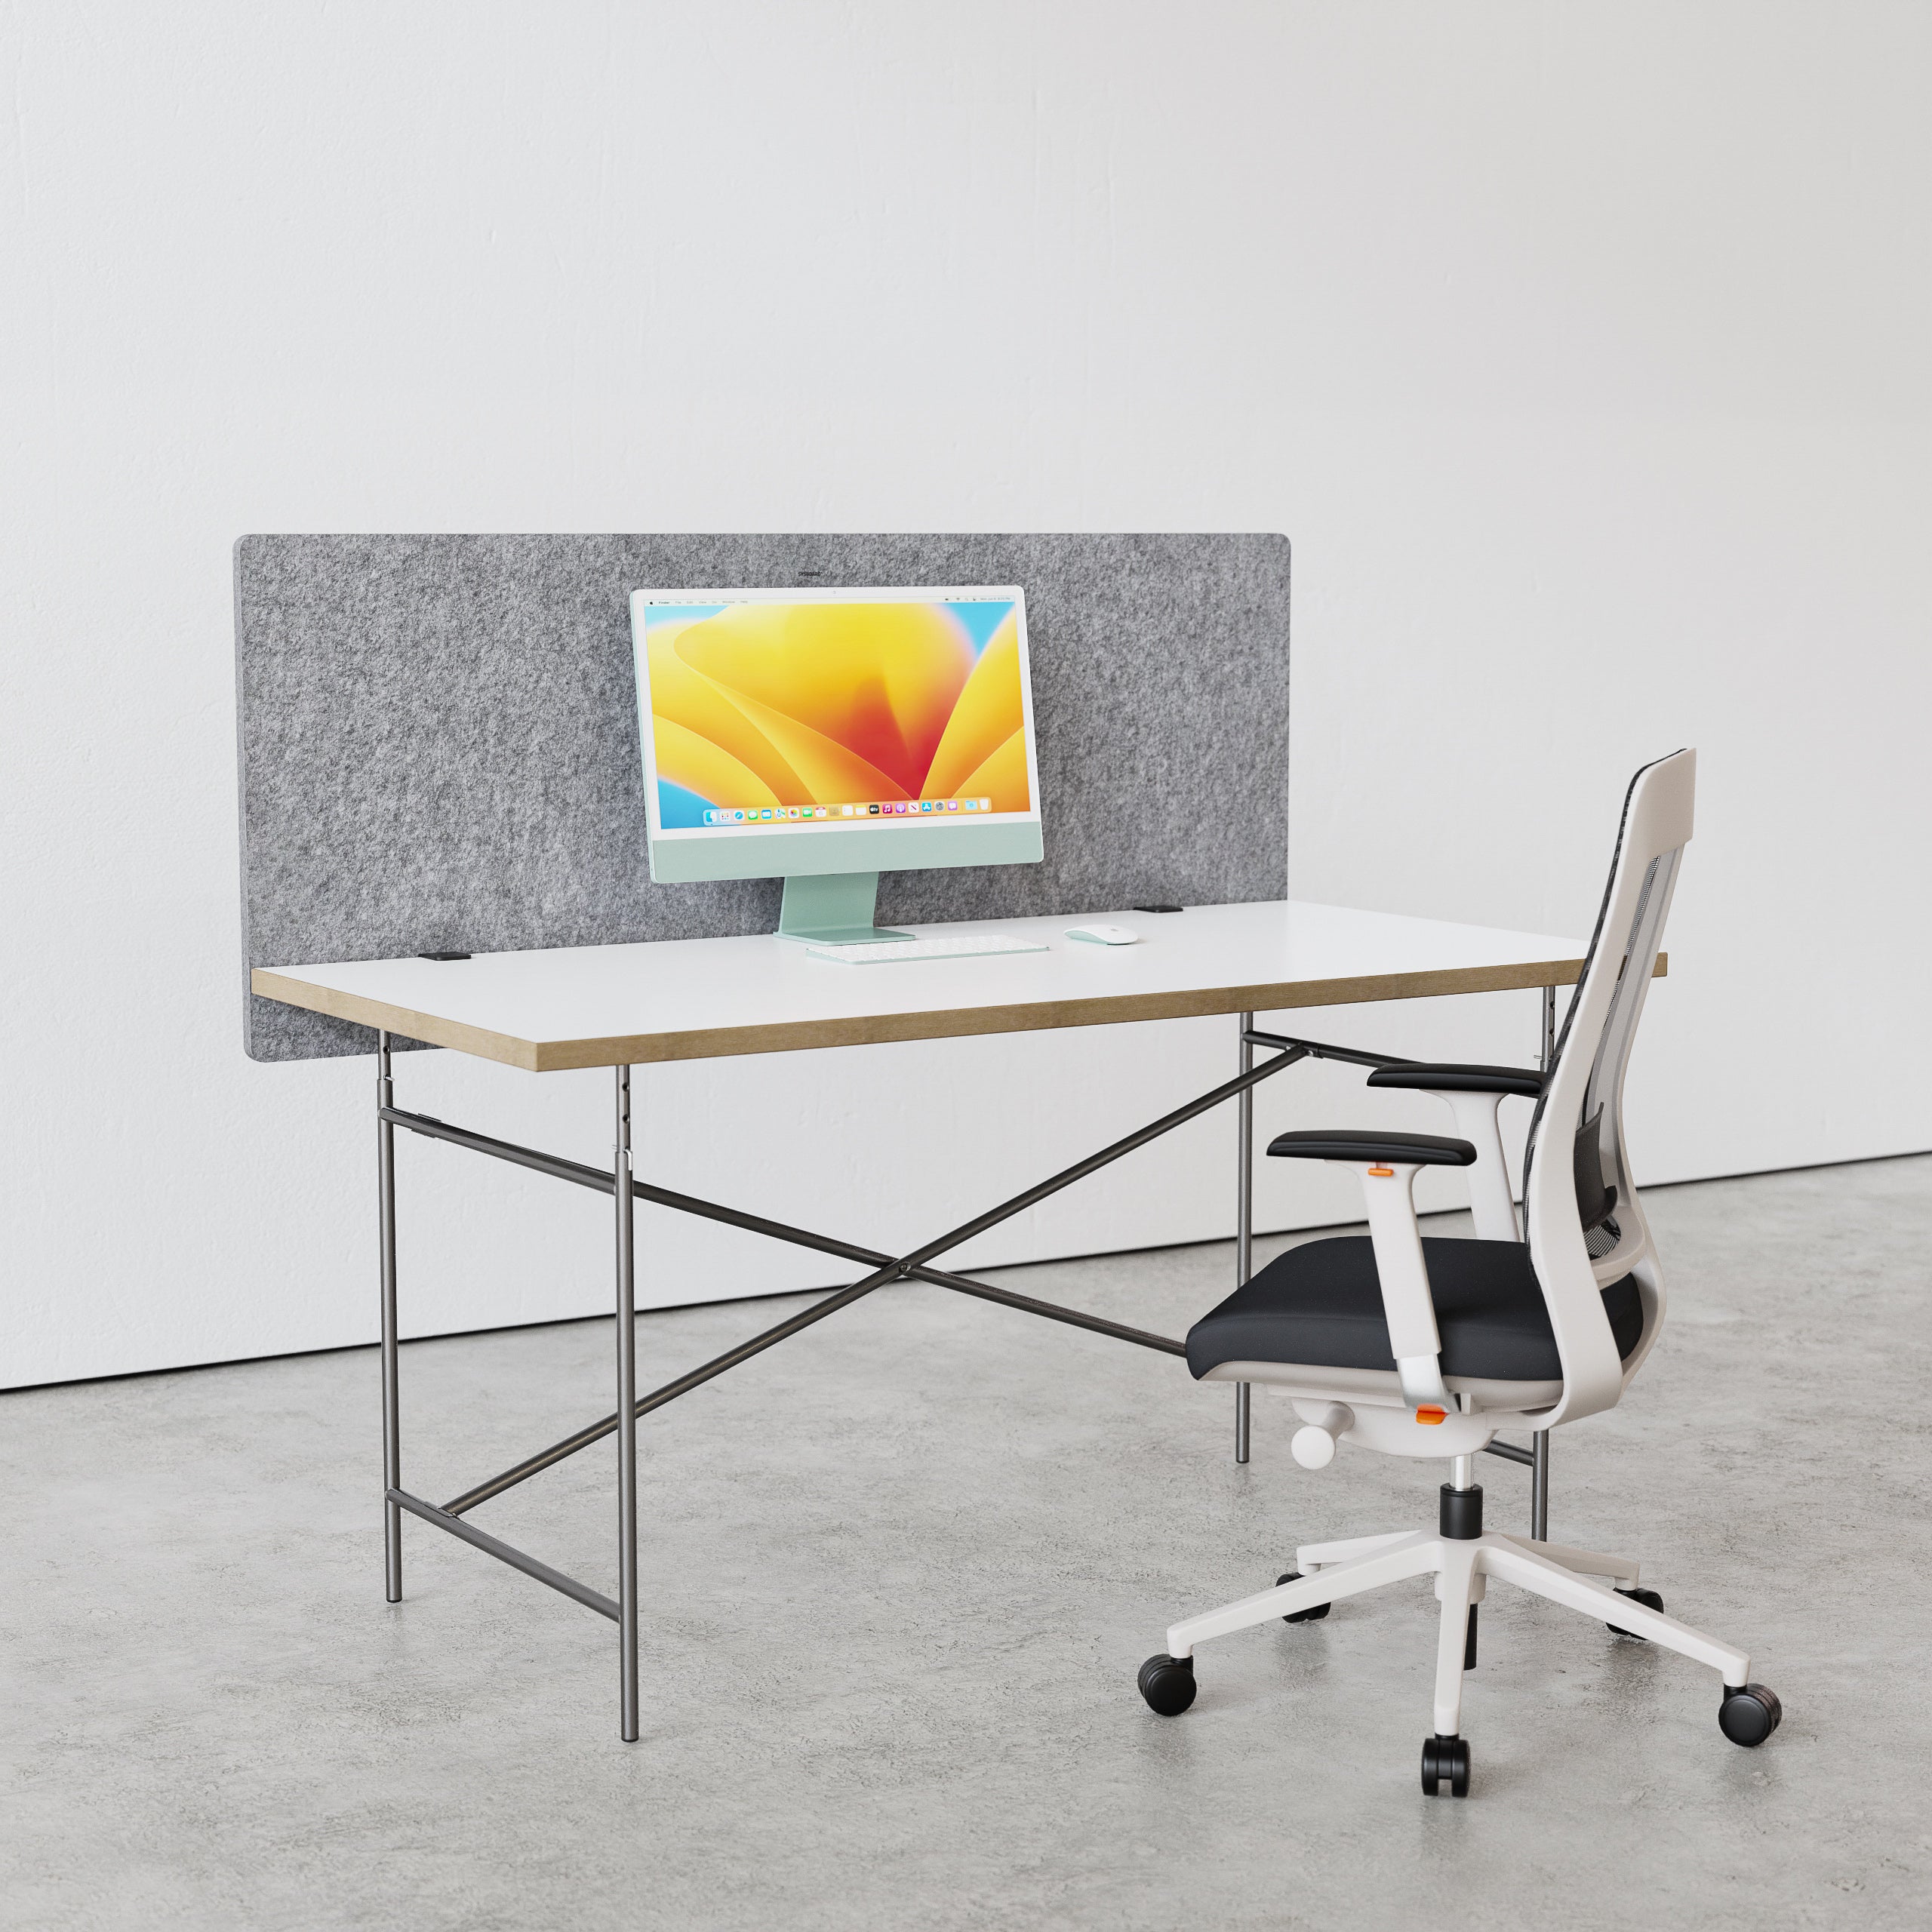 FLEX FIX normal grau, ist ein akustisch hoch wirksame Schreibtischtrennwand innerhalb der FLEX akustik Familie. In verschiedenen farben erhältlich, biegsam, ökologisch, recycelt, Office , Home Office, SYSBOARD